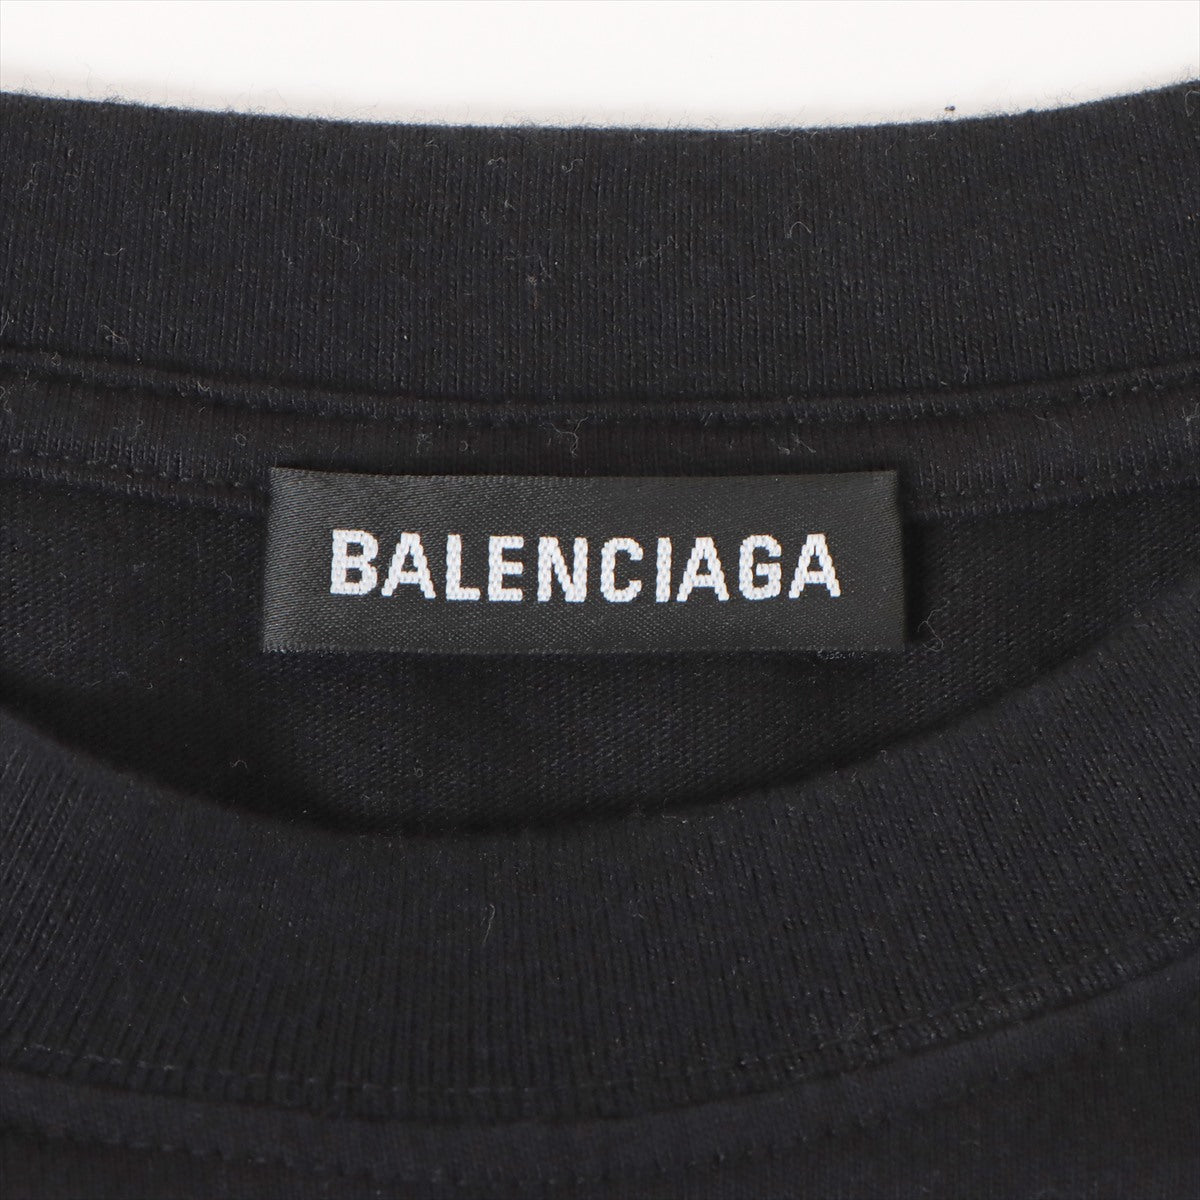 バレンシアガ 20SS コットン Tシャツ S メンズ ブラック リアルバレンシアガ